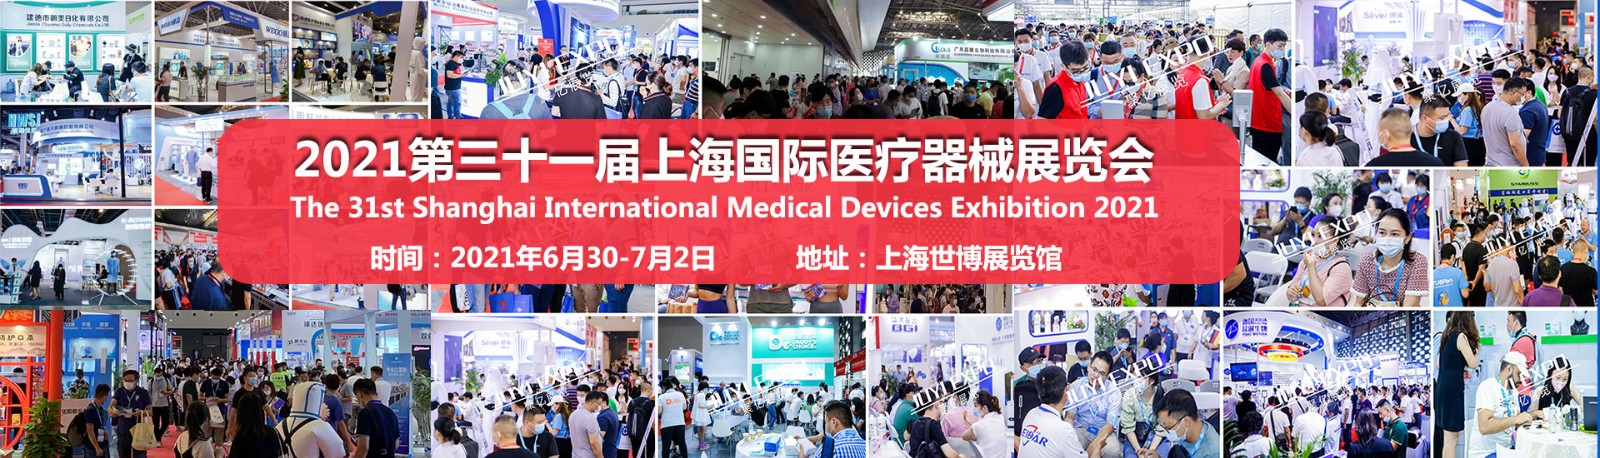 2021年医疗器械展会--上海站